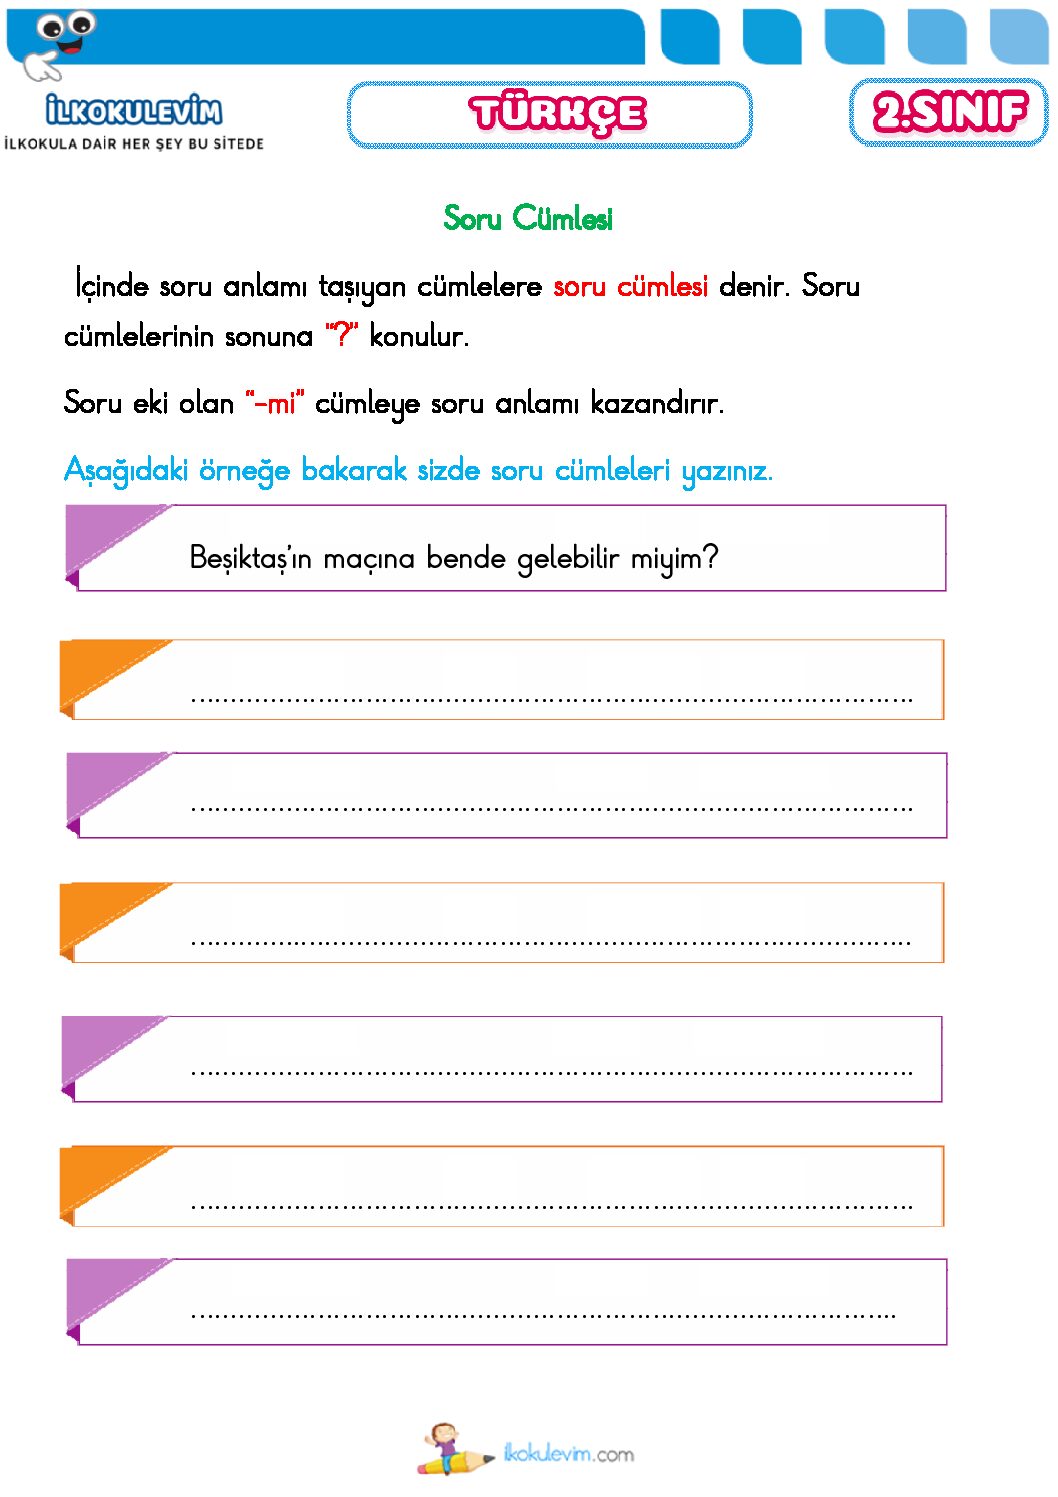 2 sinif turkce soru cumlesi etkinligi 1 pdf